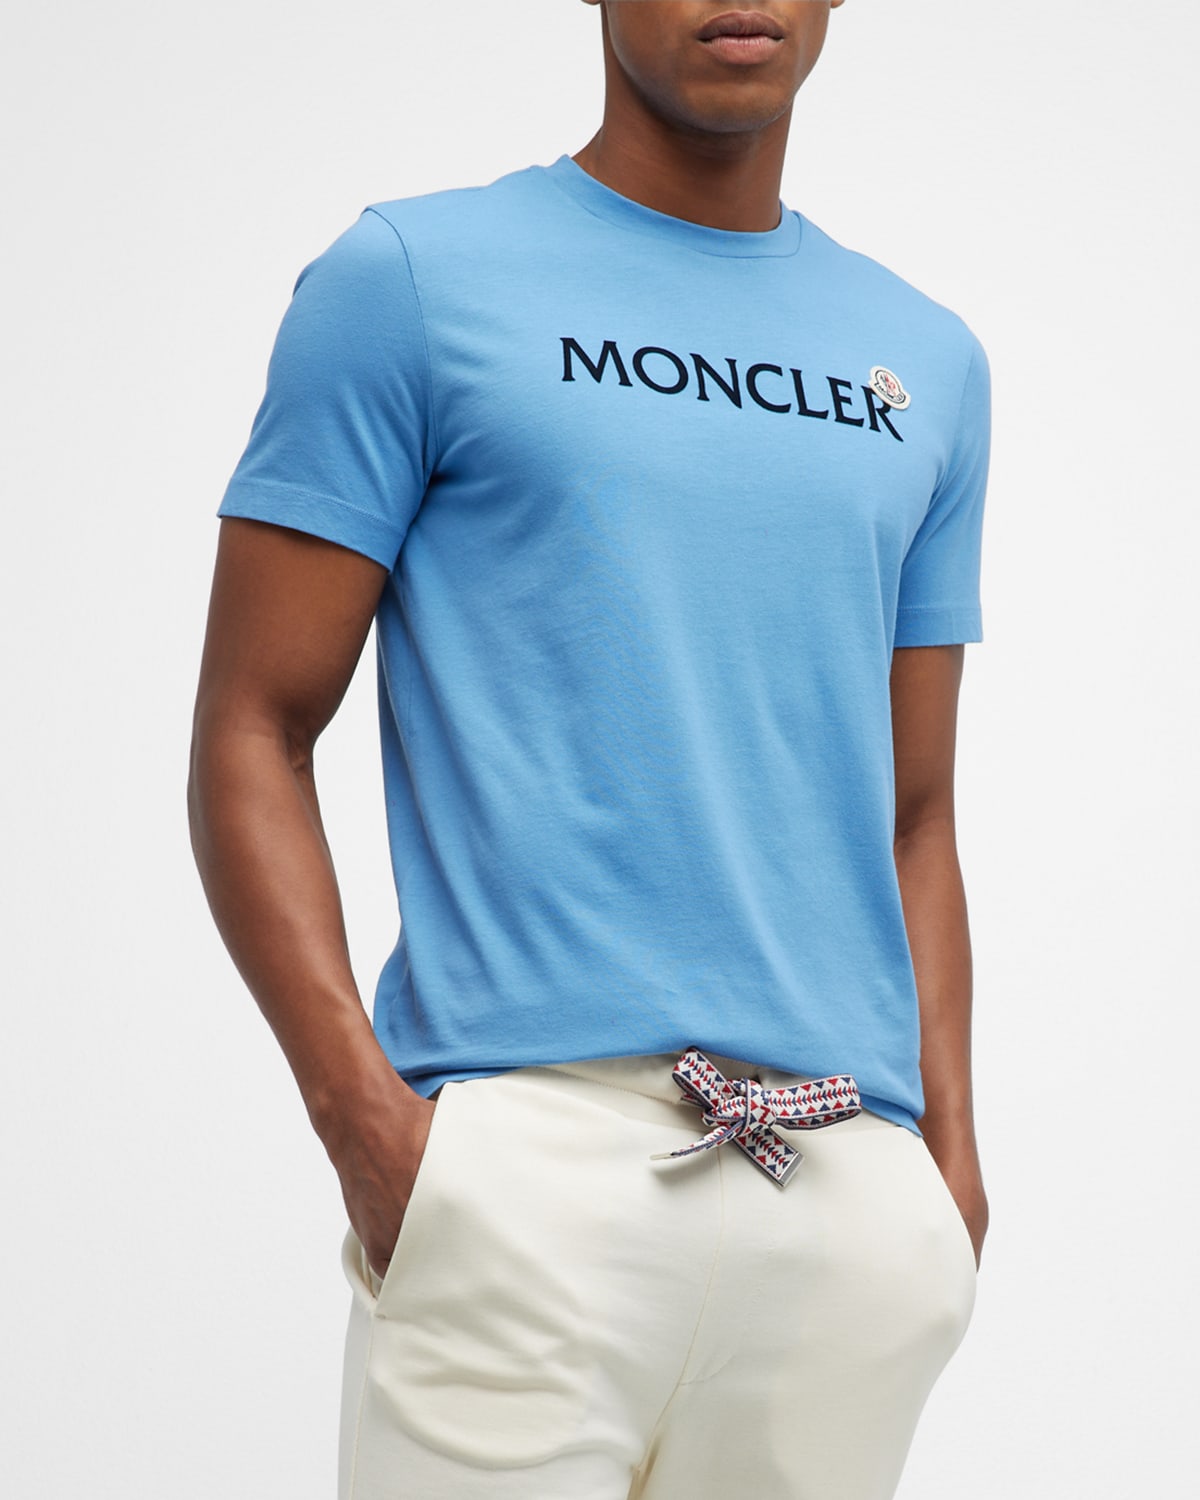 achterlijk persoon Wig huichelarij Moncler Men's Logo T-shirt With Patch In Turquoise | ModeSens